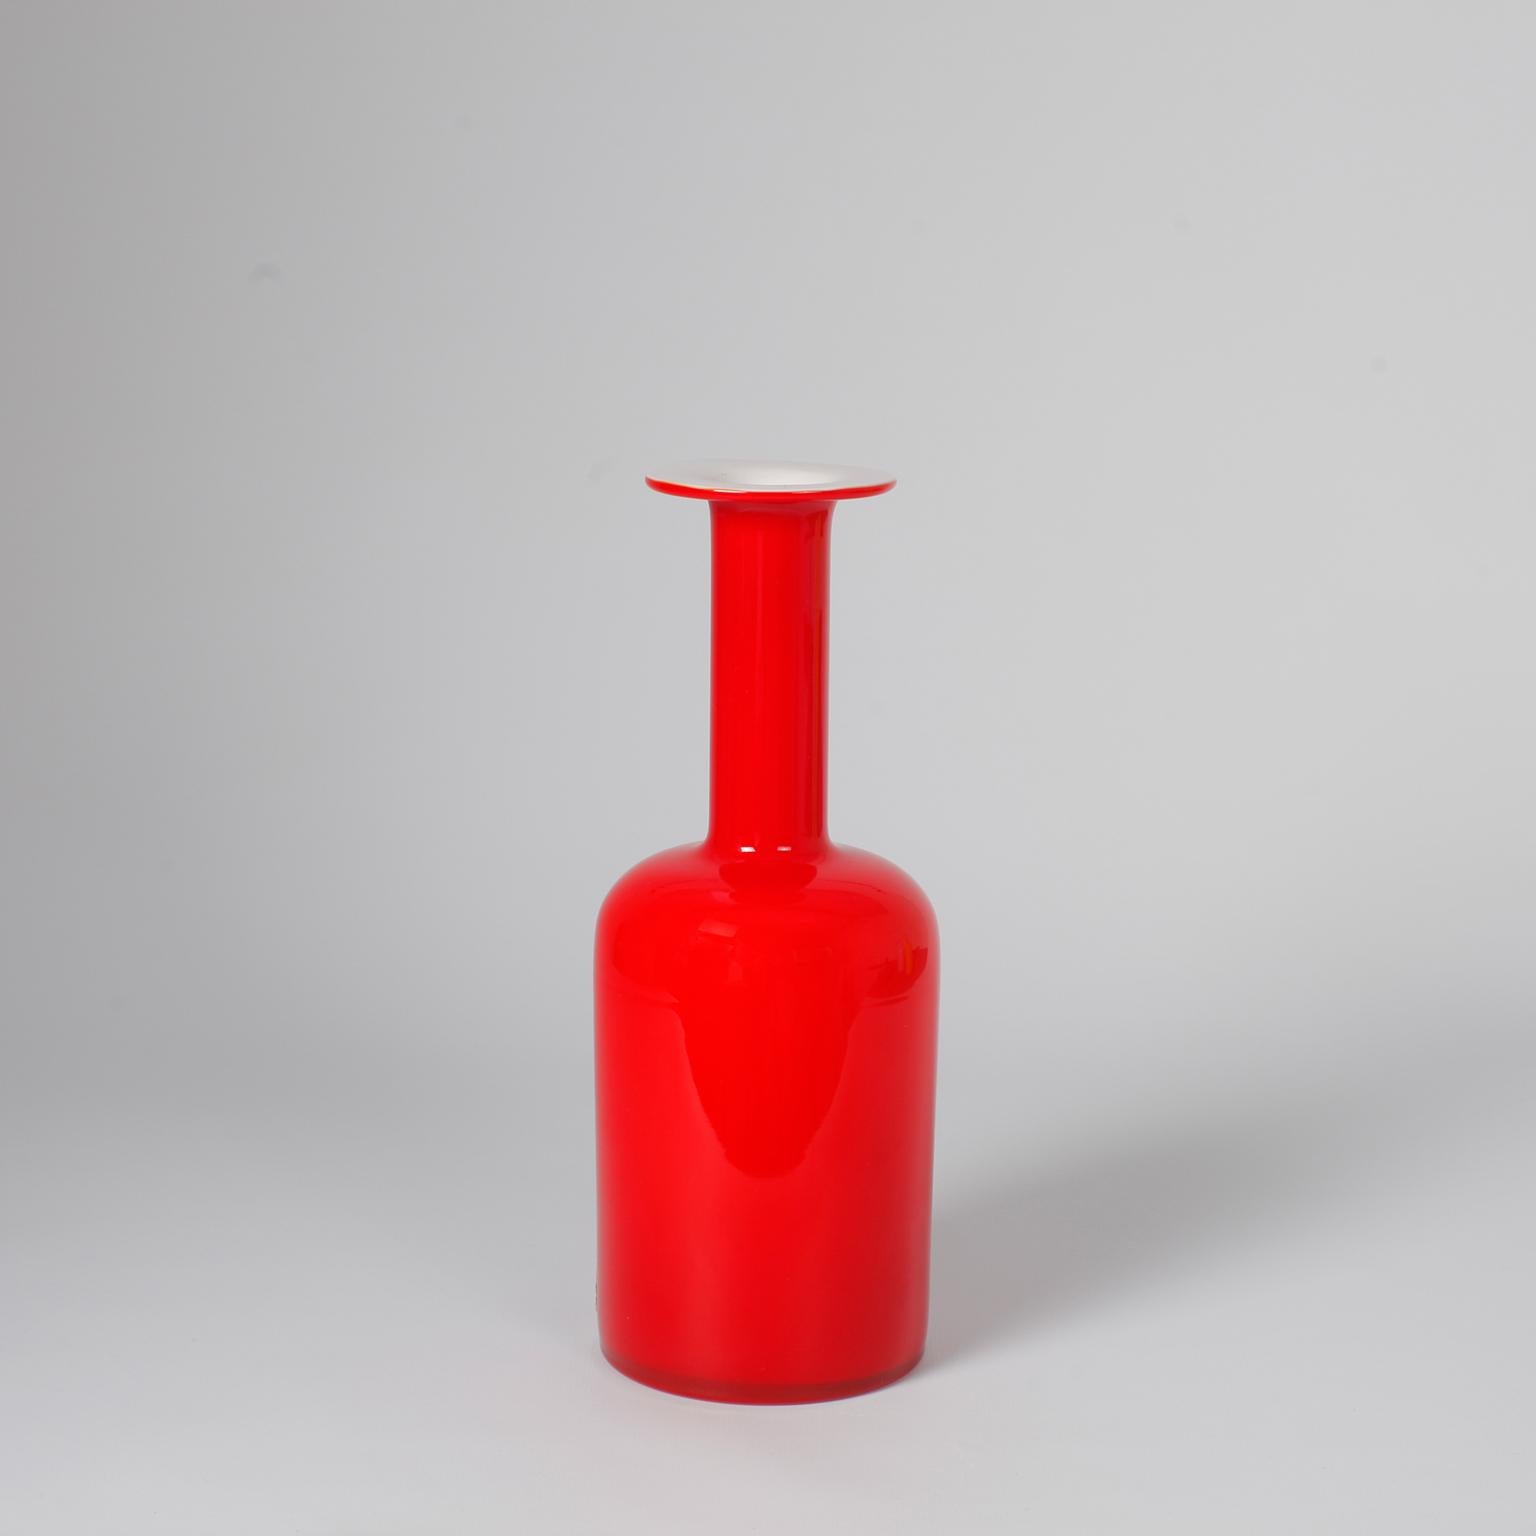 Moderne skandinavische Vasen aus rot gefärbtem Glas,
Entworfen von Otto Brauer für Holmegaard Dänemark, 1960er Jahre.
Maße: Höhe 24,5 cm
etikettiert